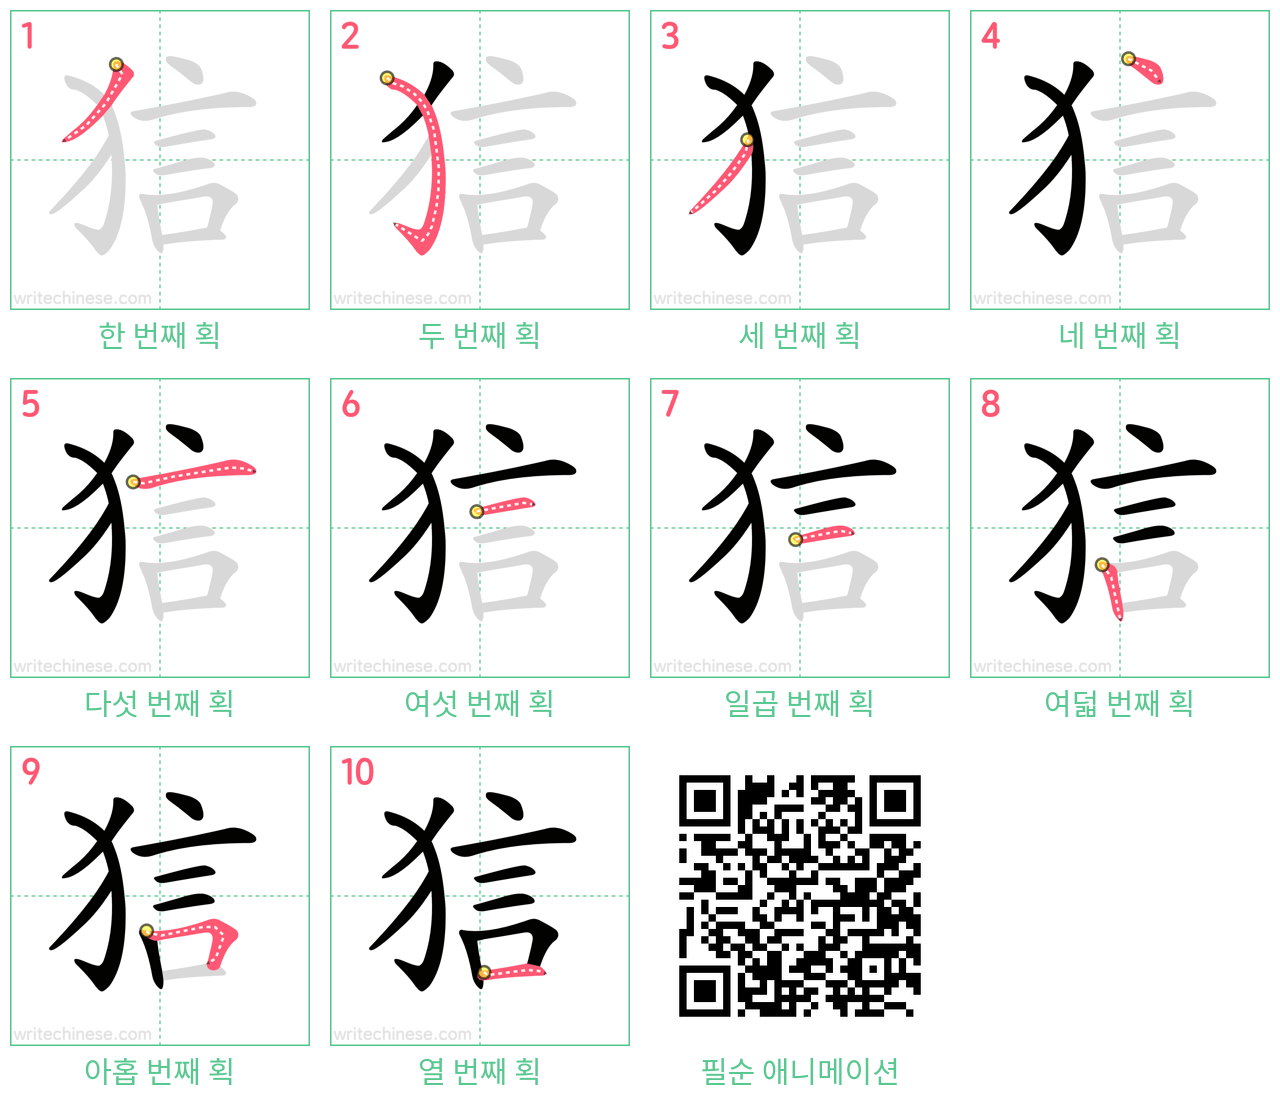 狺 step-by-step stroke order diagrams